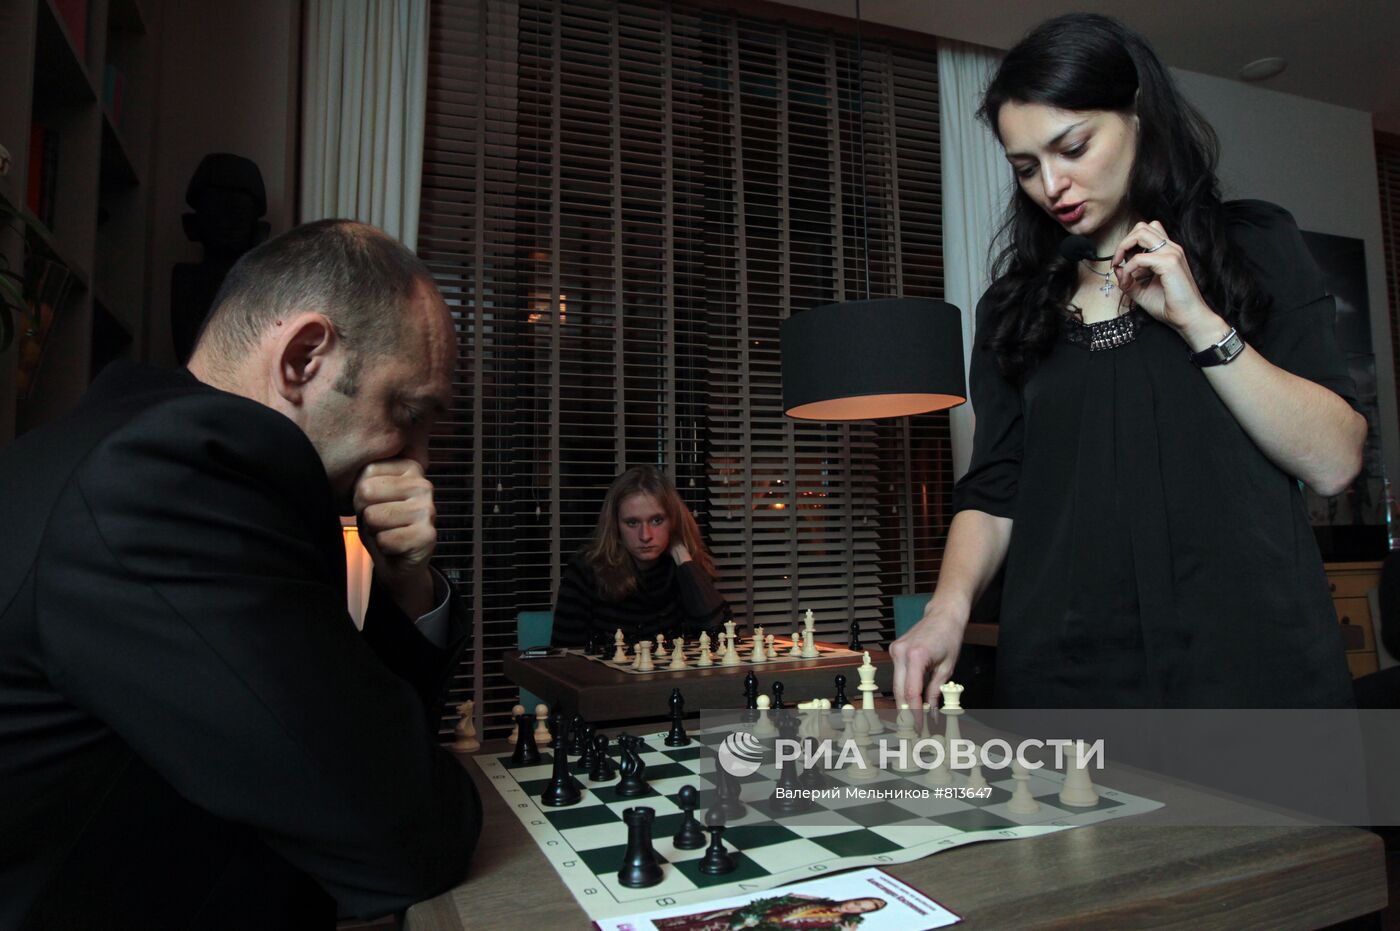 Сеанс одновременной игры в шахматы с Александрой Костенюк